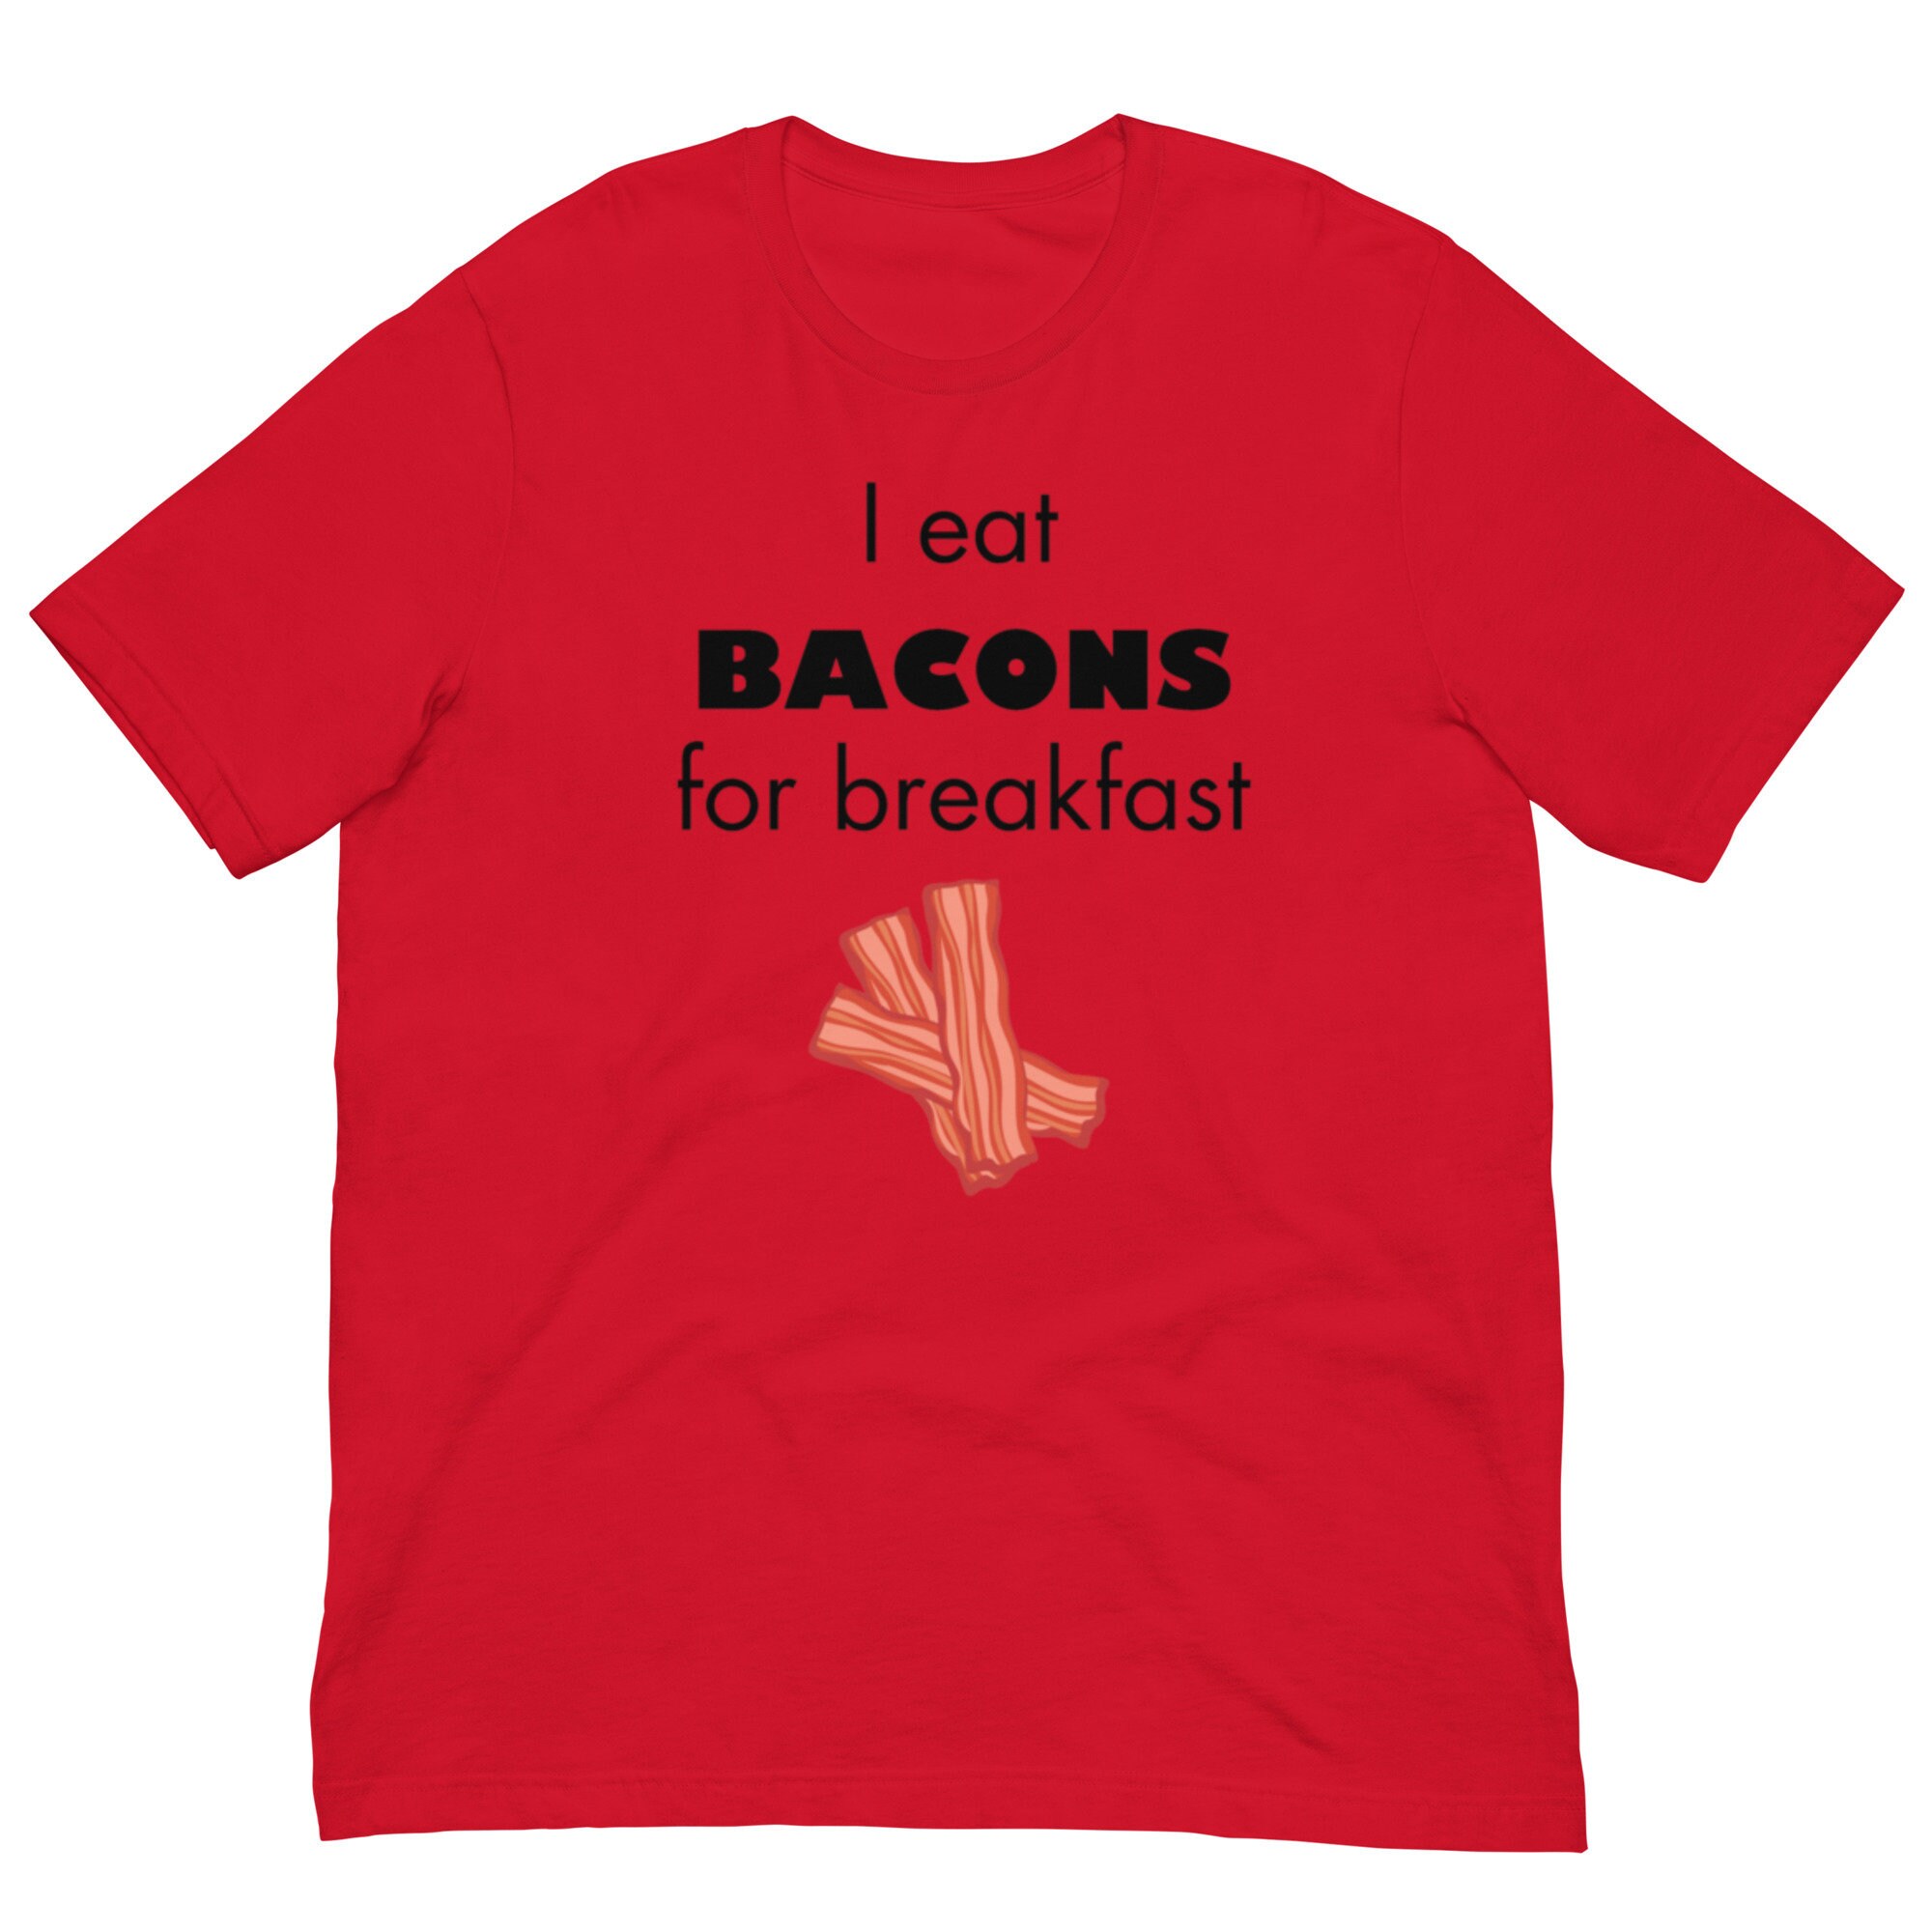 tshirt new bacon - Roblox